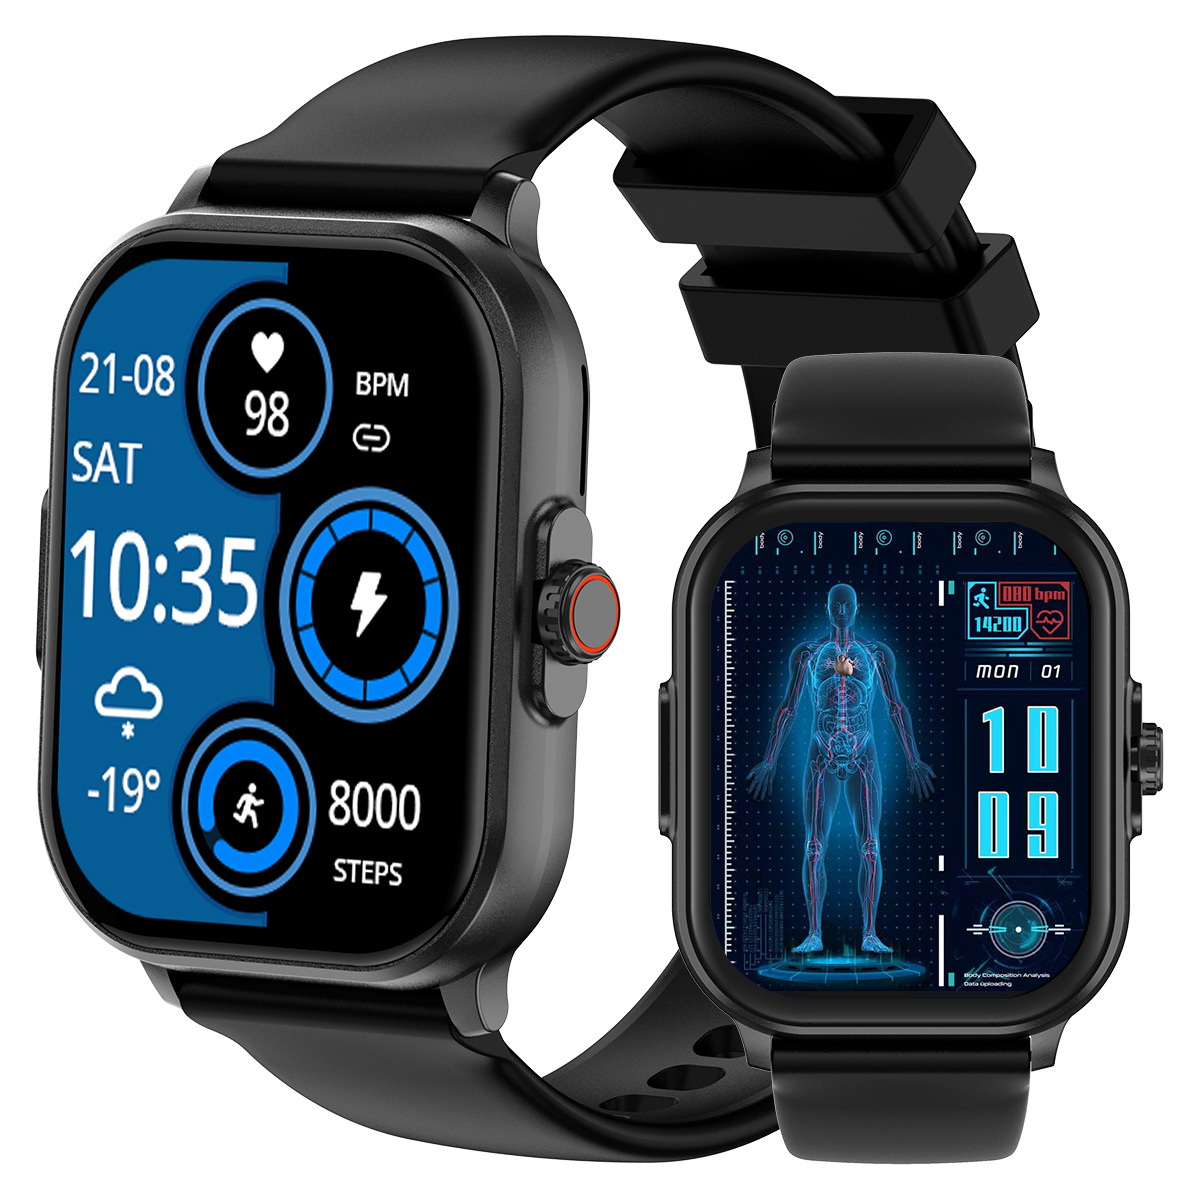 新品E02智能手表ECG心电测量心率血压血氧运动计步多功能通话手环